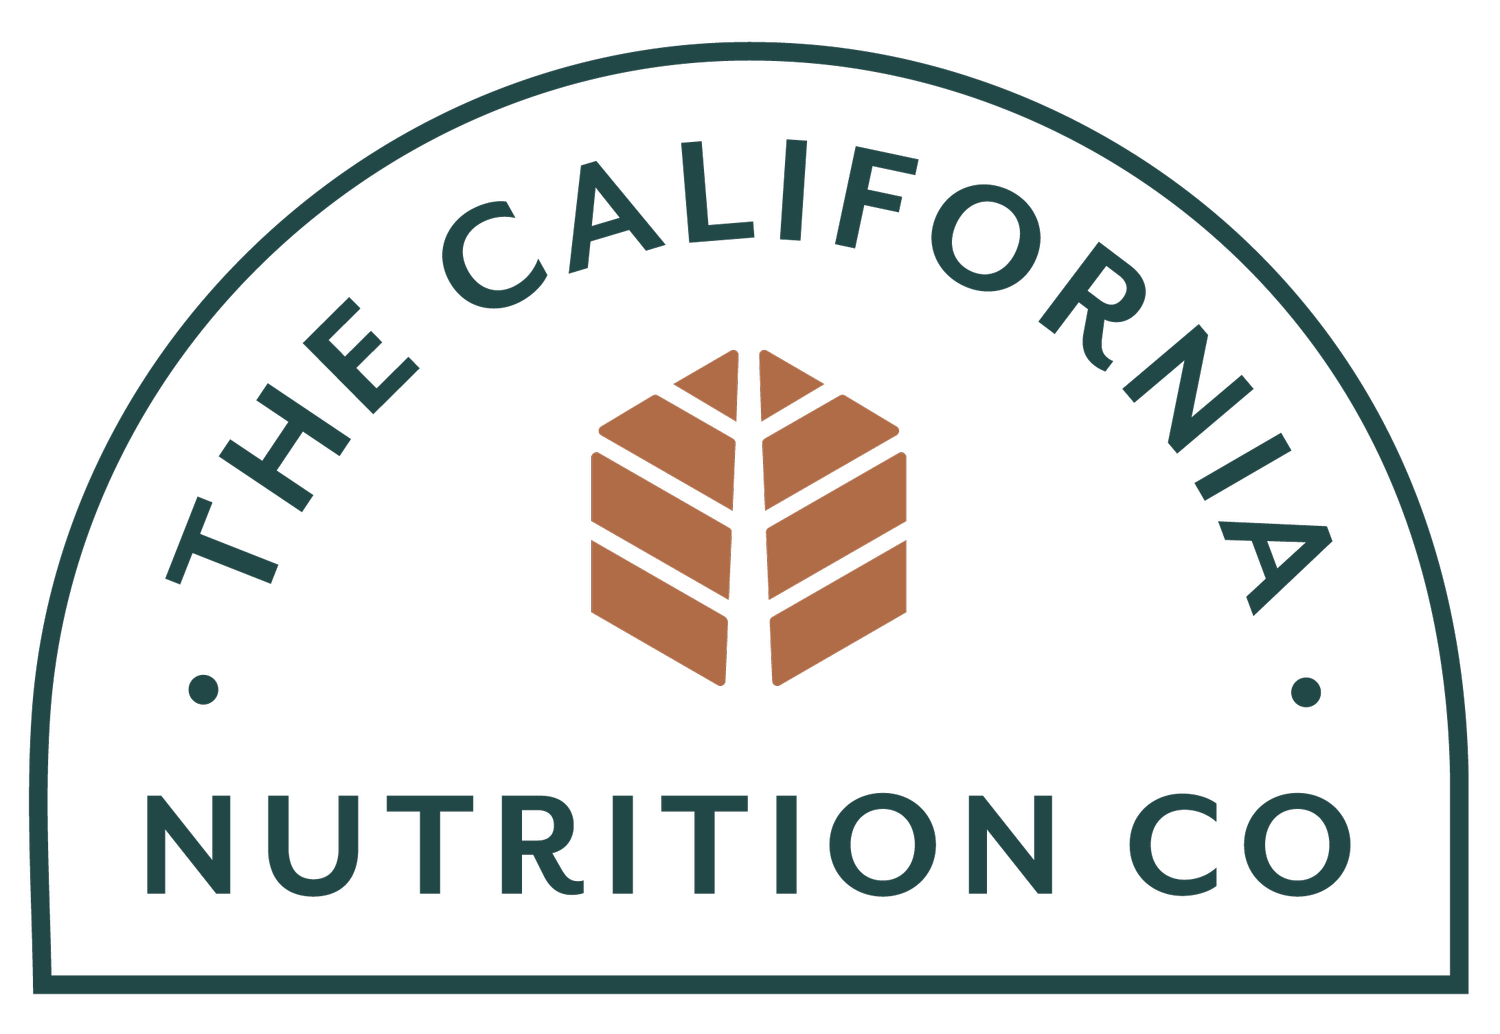 The California Nutrition Company